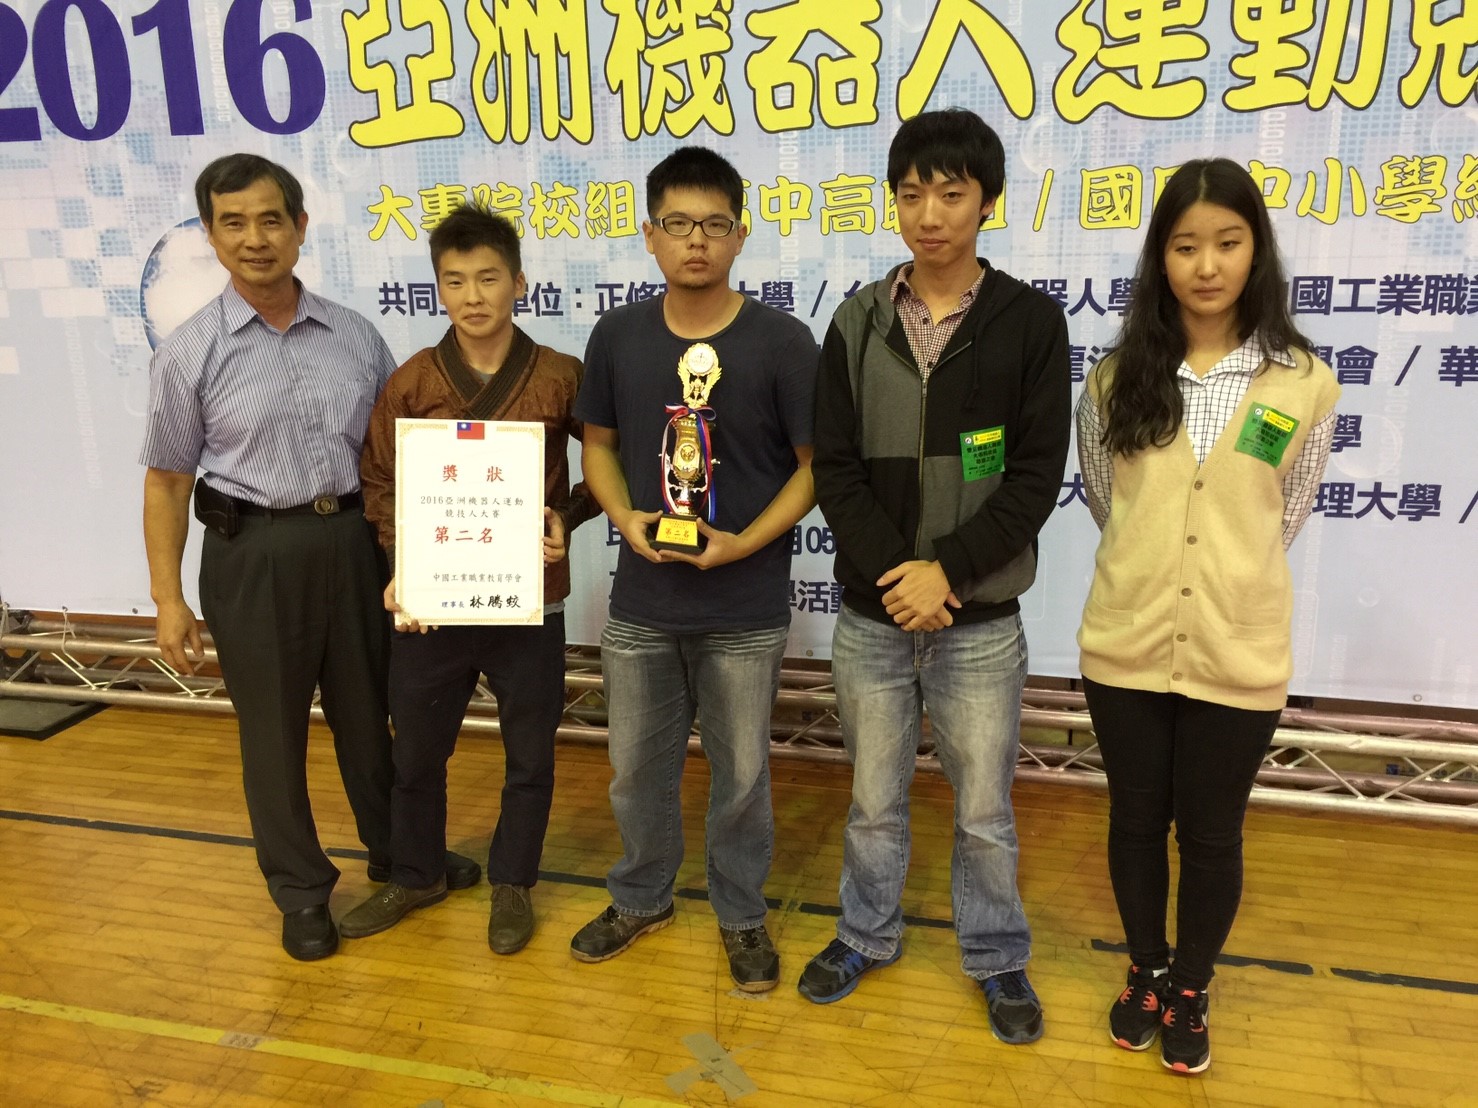 2016.11.05亞洲機器人大賽頒獎_170302_0047